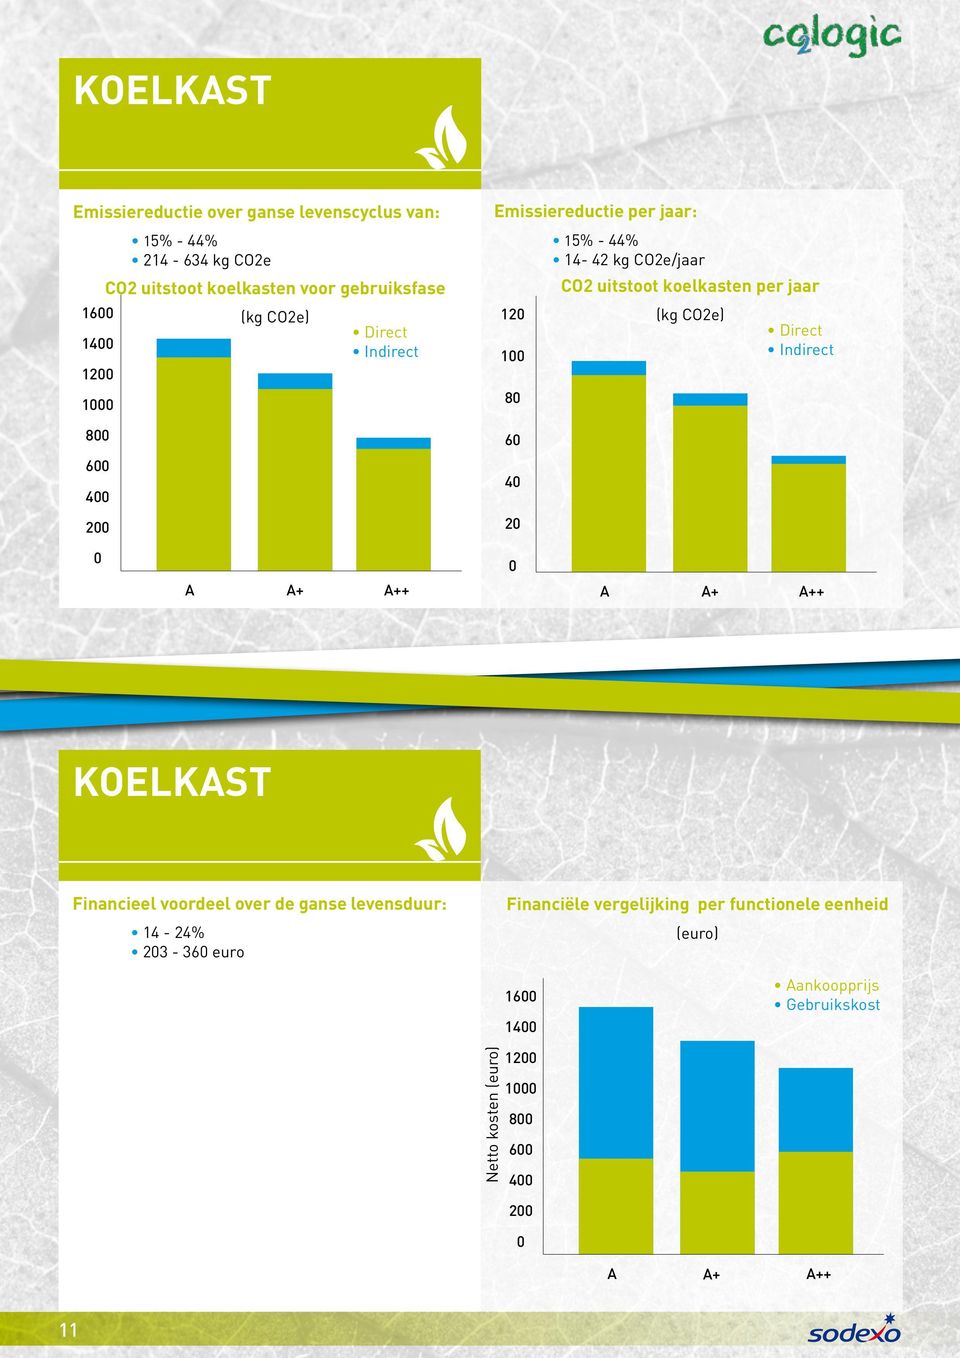 koelkasten per jaar (kg CO2e) A A+ A++ A A+ A++ Koelkast Financieel voordeel over de ganse levensduur: 14-24% 23-36 euro